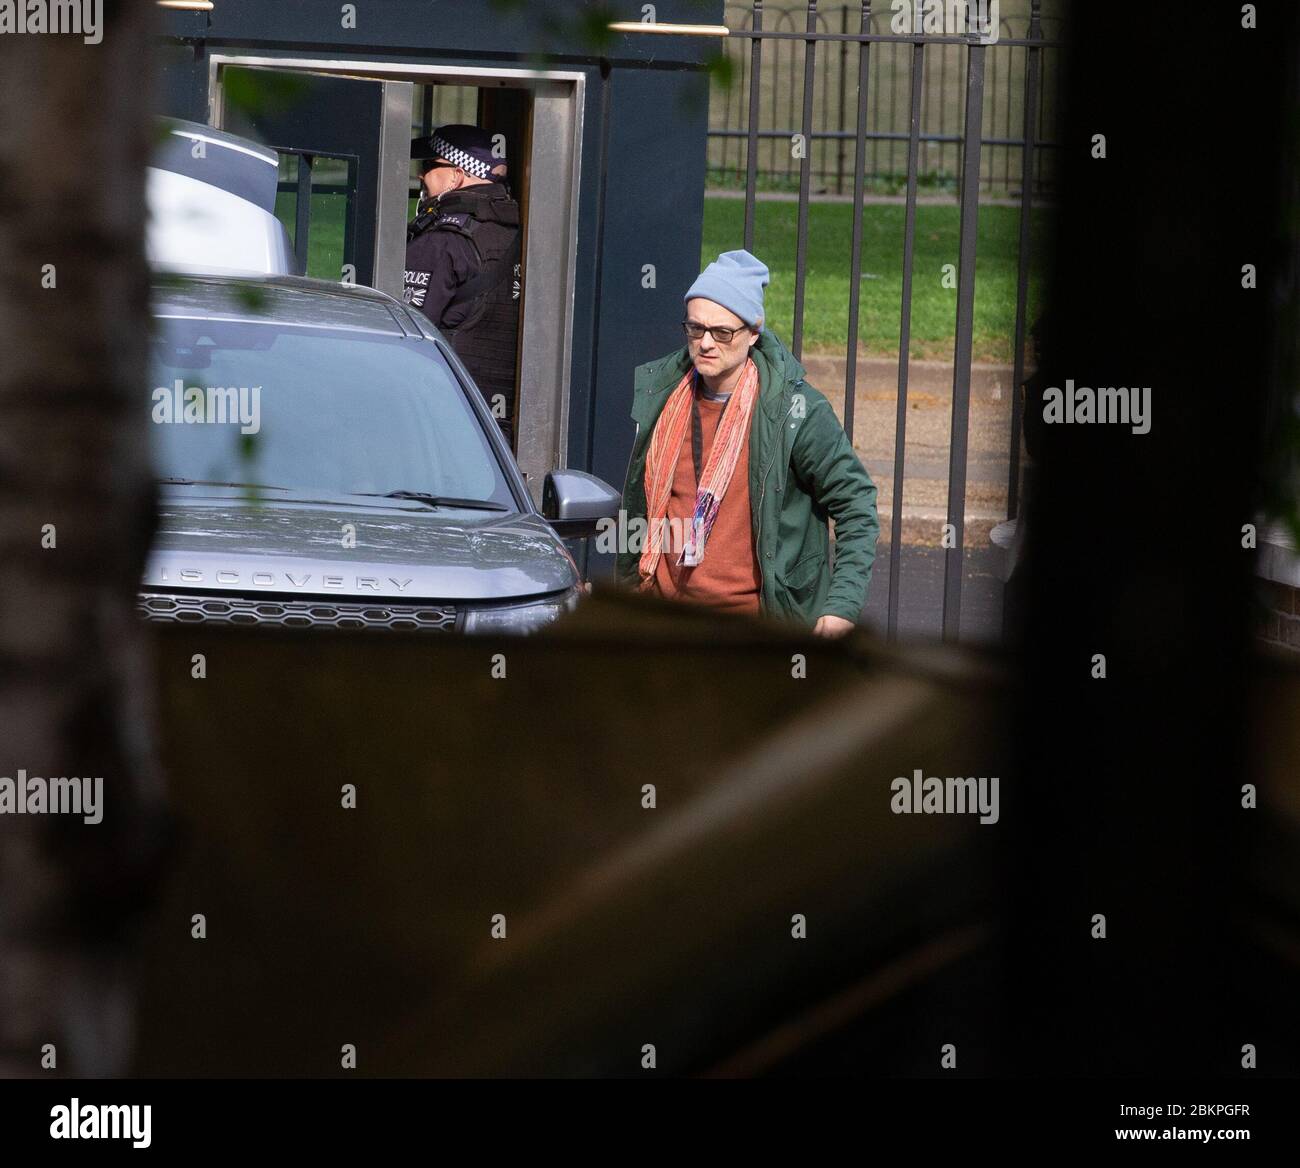 Londra, Regno Unito. 5 maggio 2020. Dominic Cummings, consigliere politico capo di Boris Johnson, arriva a Downing Street. Credit: Mark Thomas/Alamy Live News Foto Stock